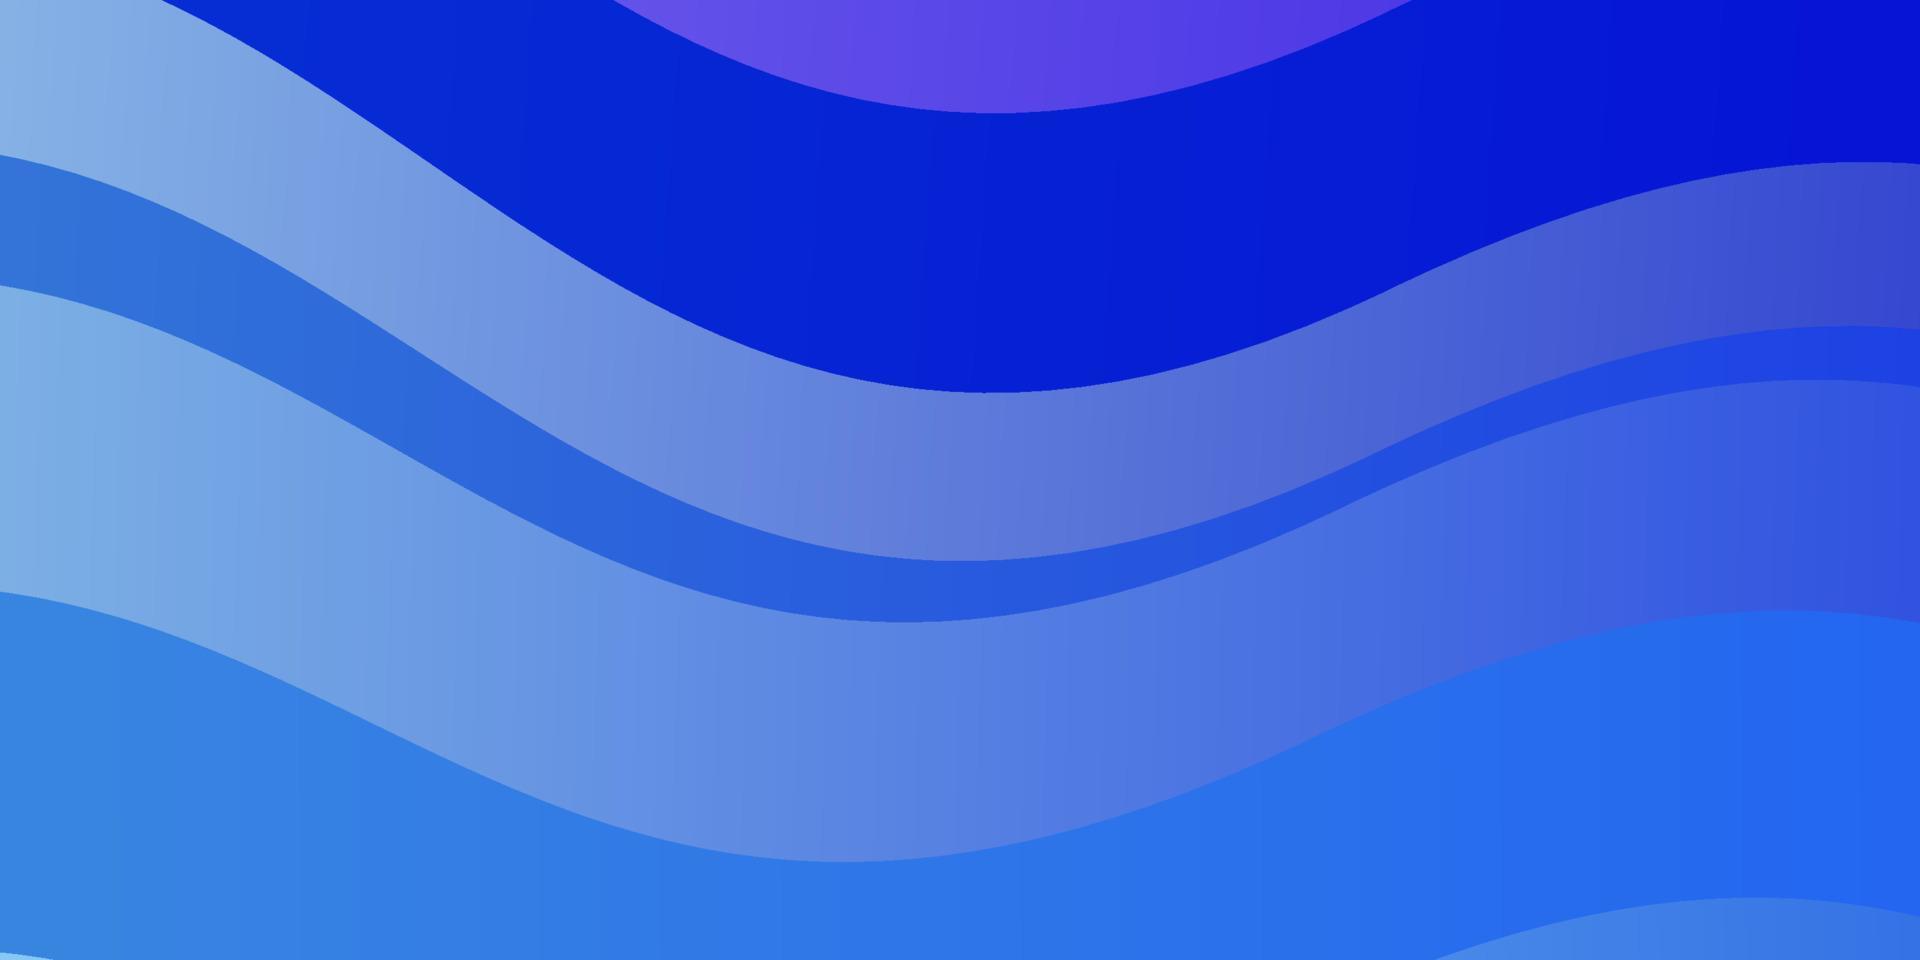 hellrosa, blauer Vektorhintergrund mit gekrümmten Linien. vektor